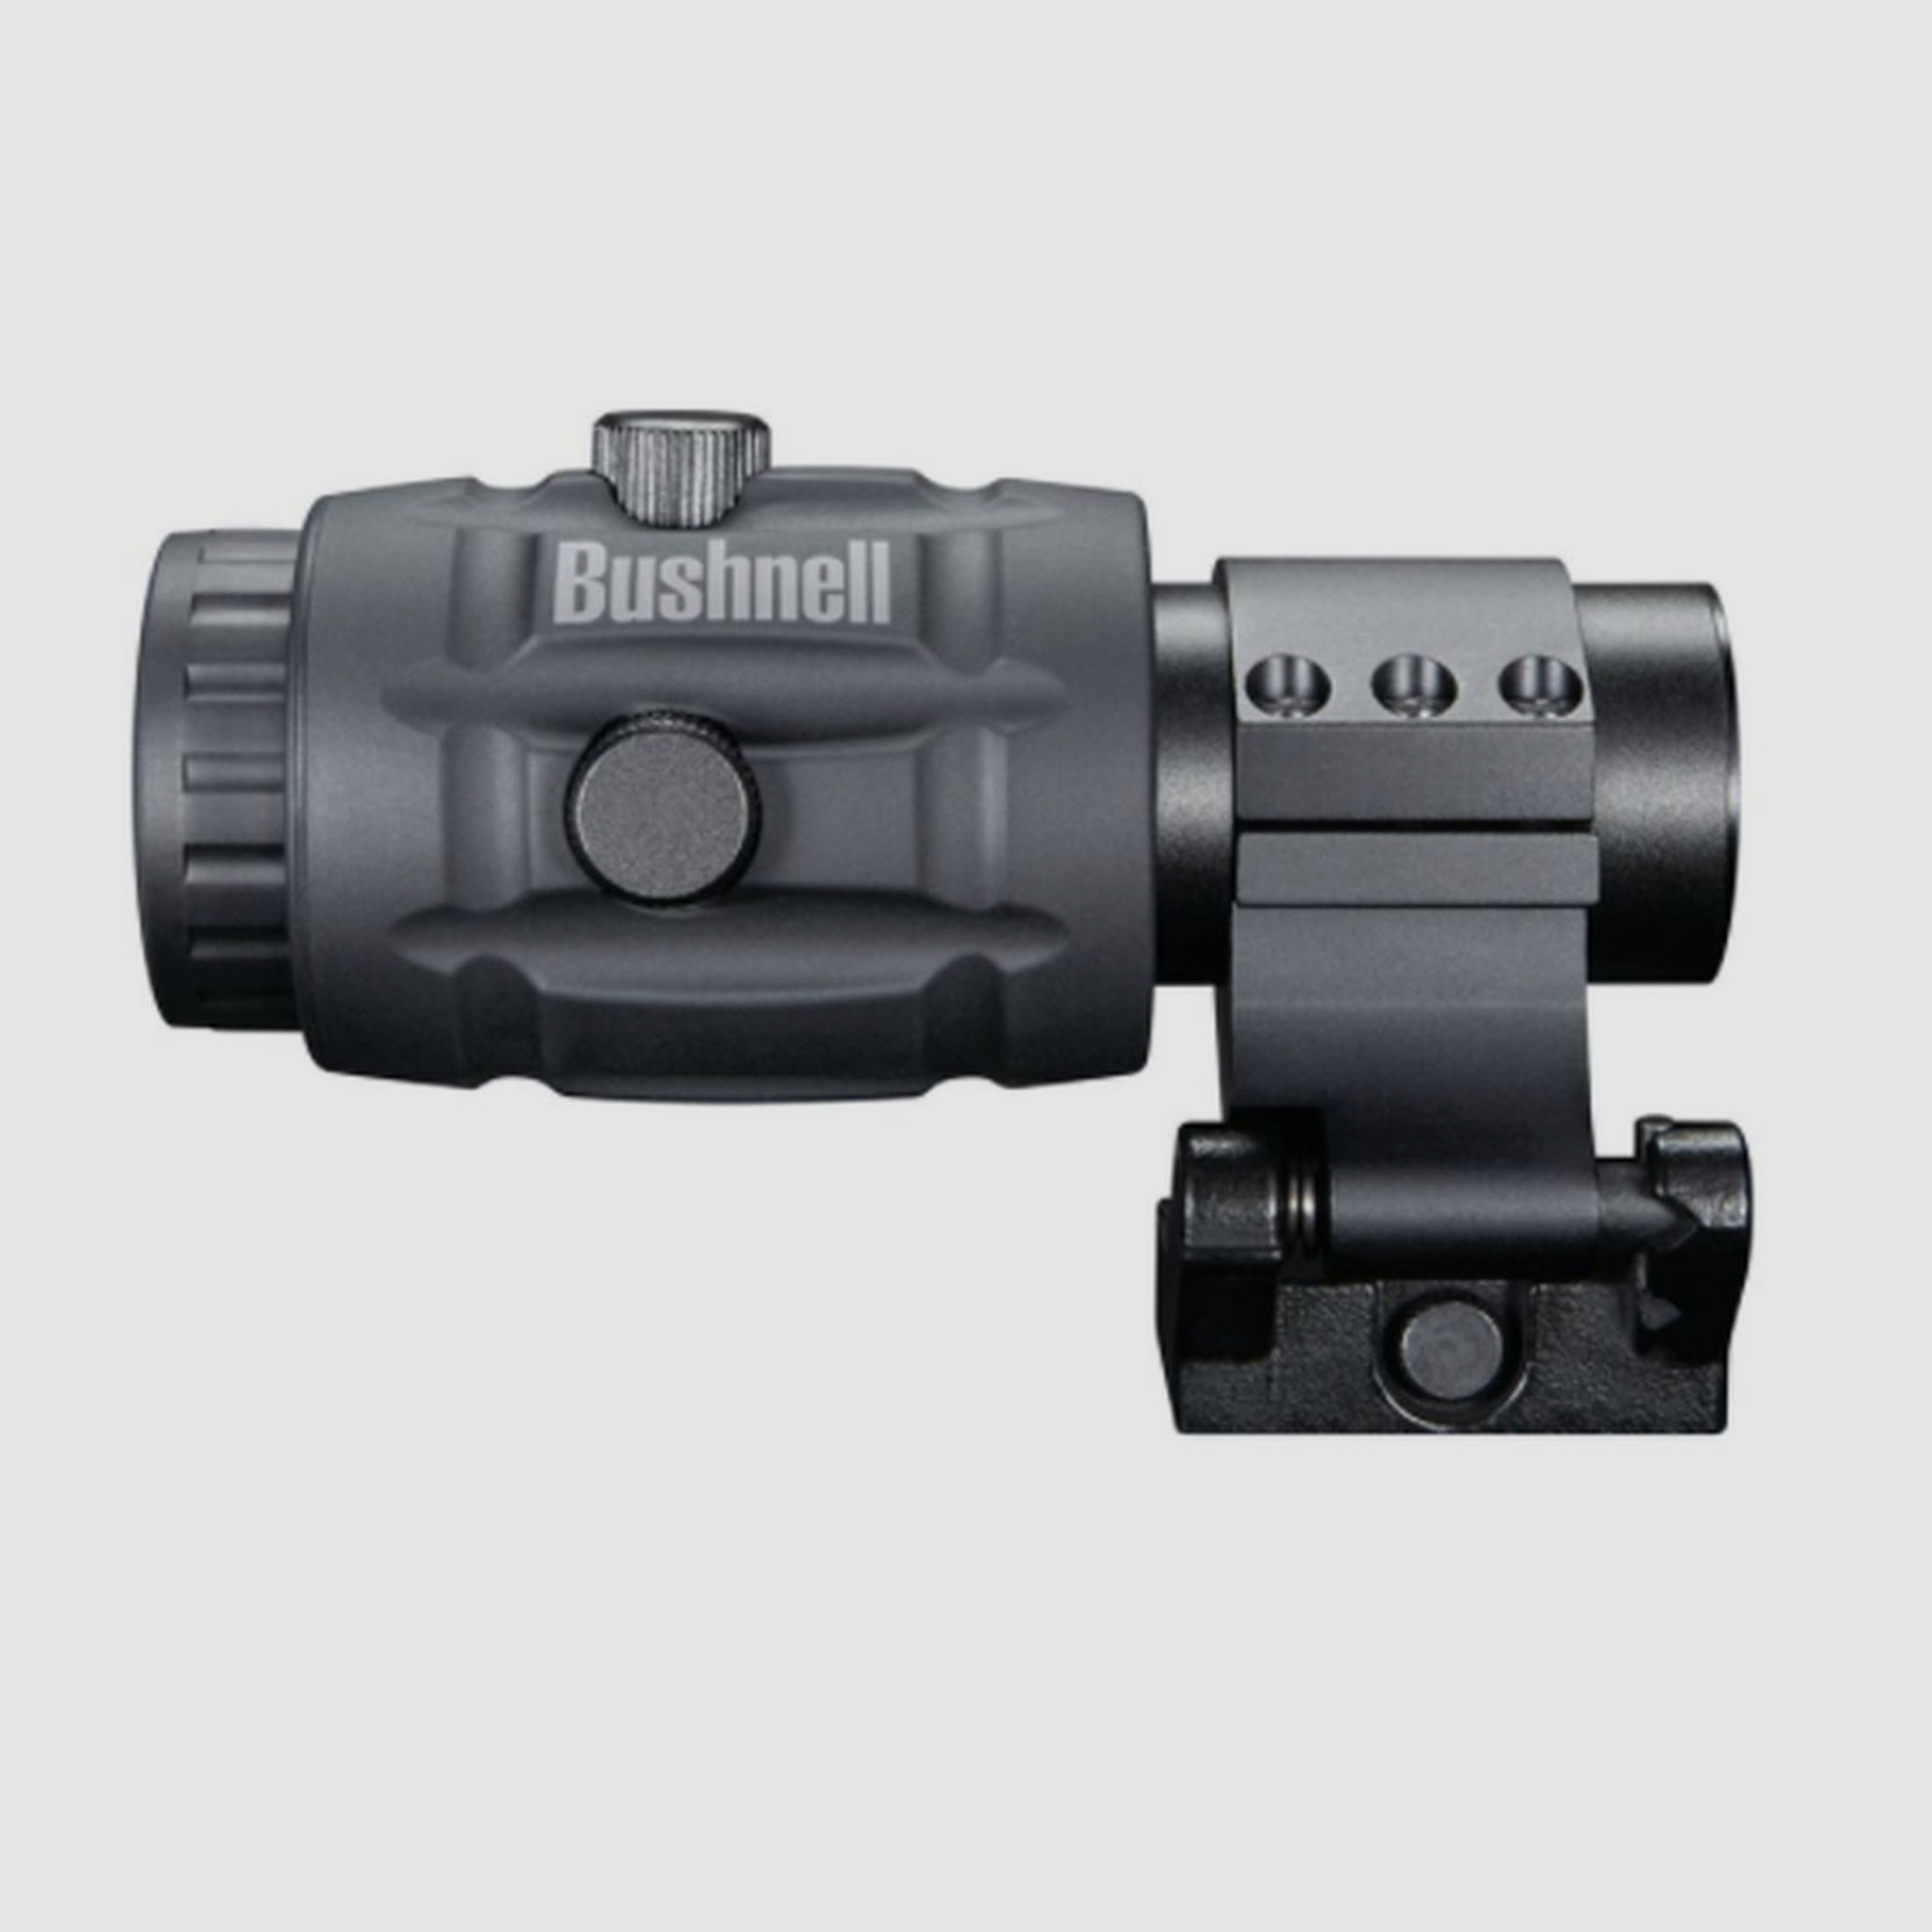 Bushnell Transition 3x Magnifier / Vergrößerungsmodul